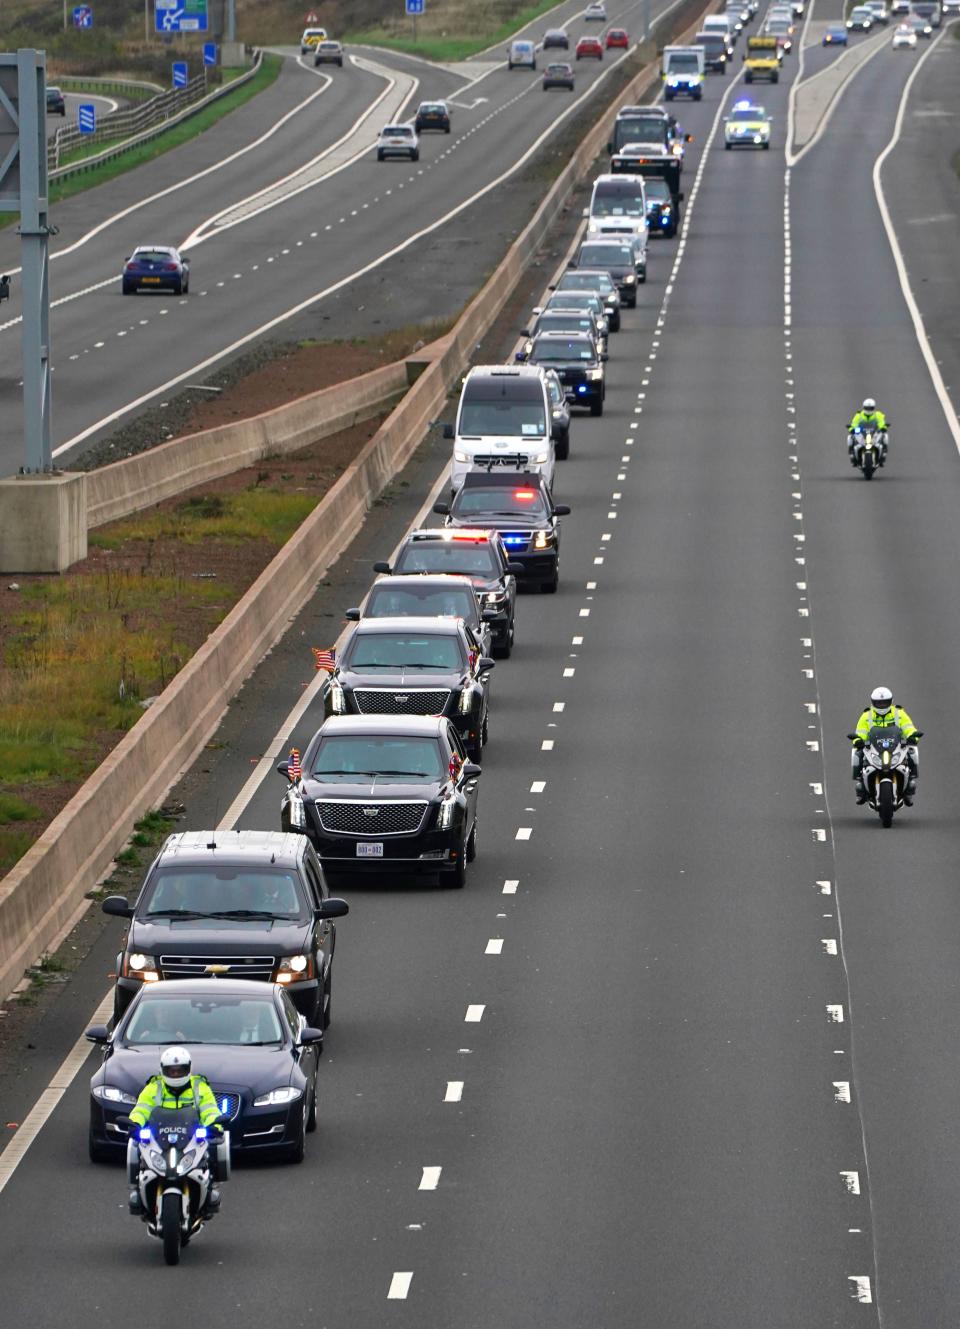 Joe Biden heads along the M8 motorway towards the Cop26 summit in Glasgow (PA)